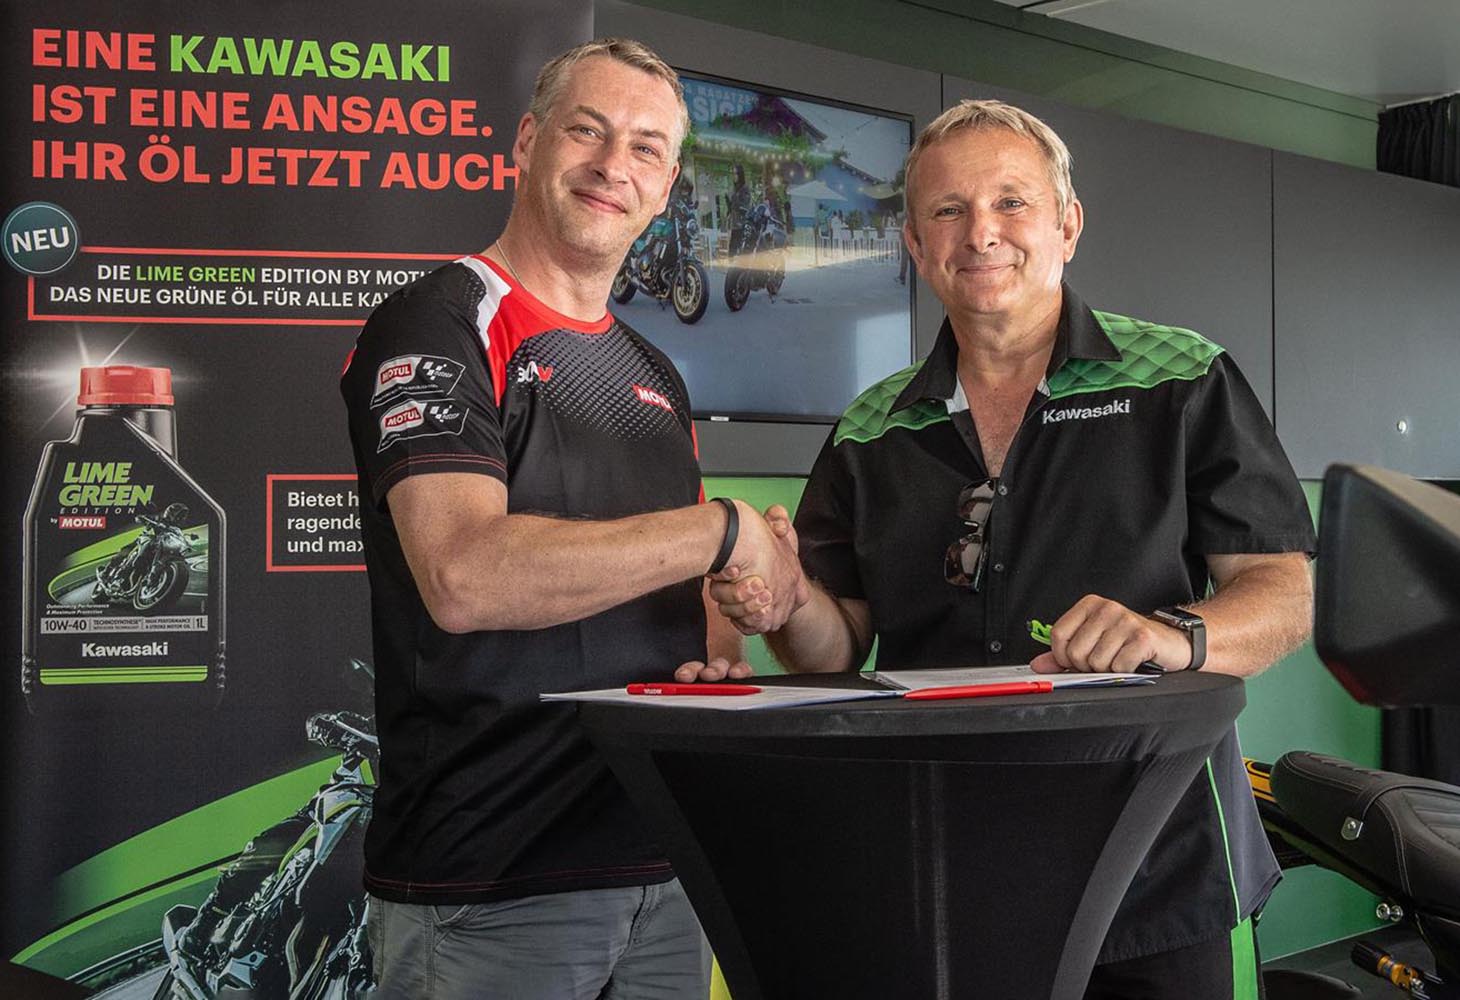 Kawasaki extends partnership with MOTUL in Germany